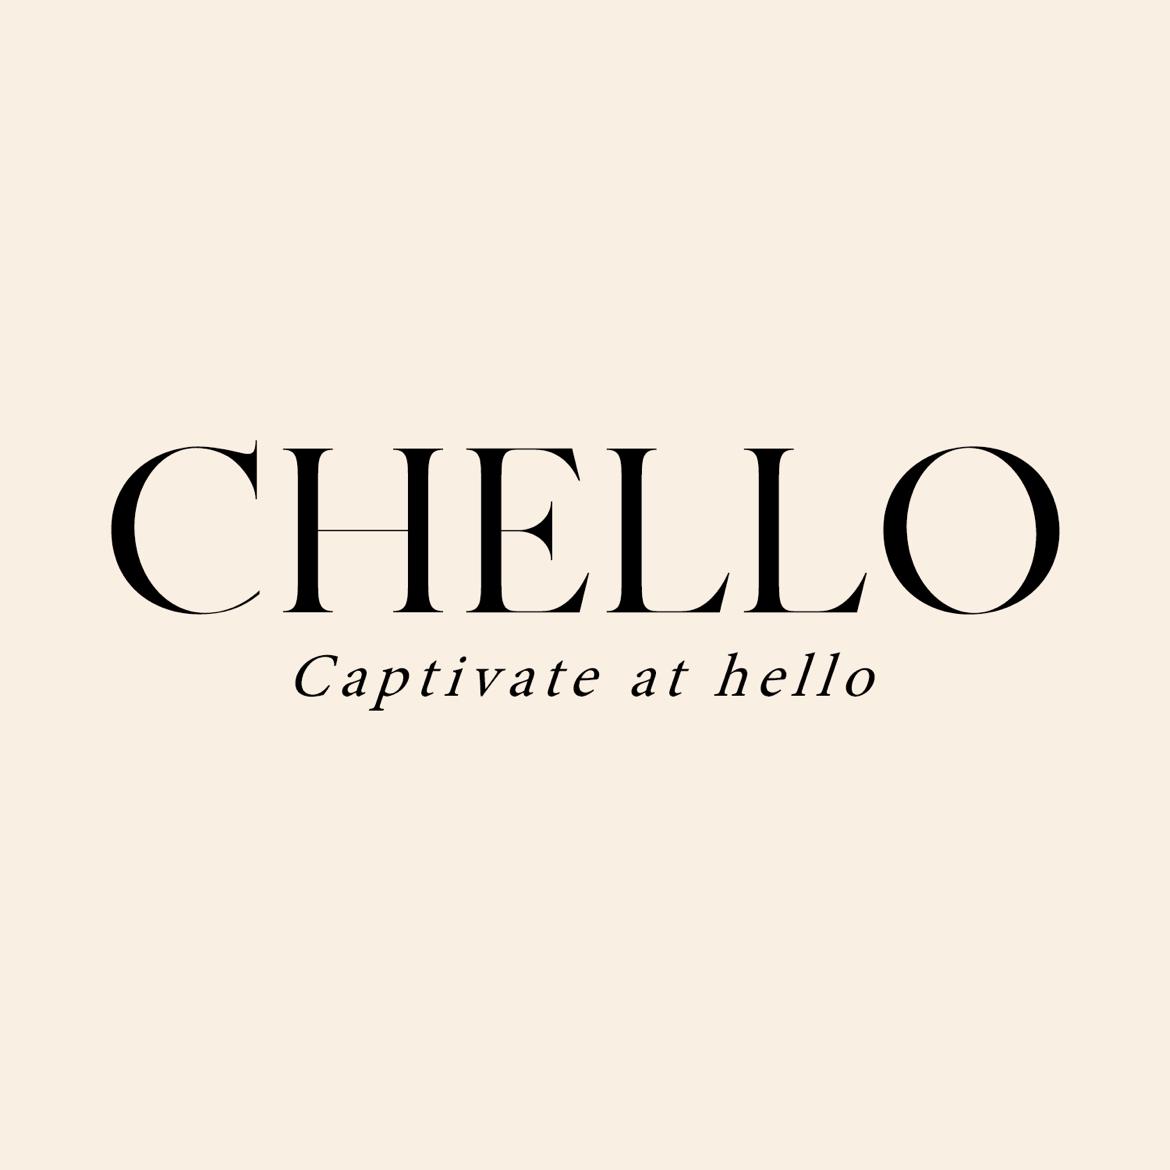 Chello's images